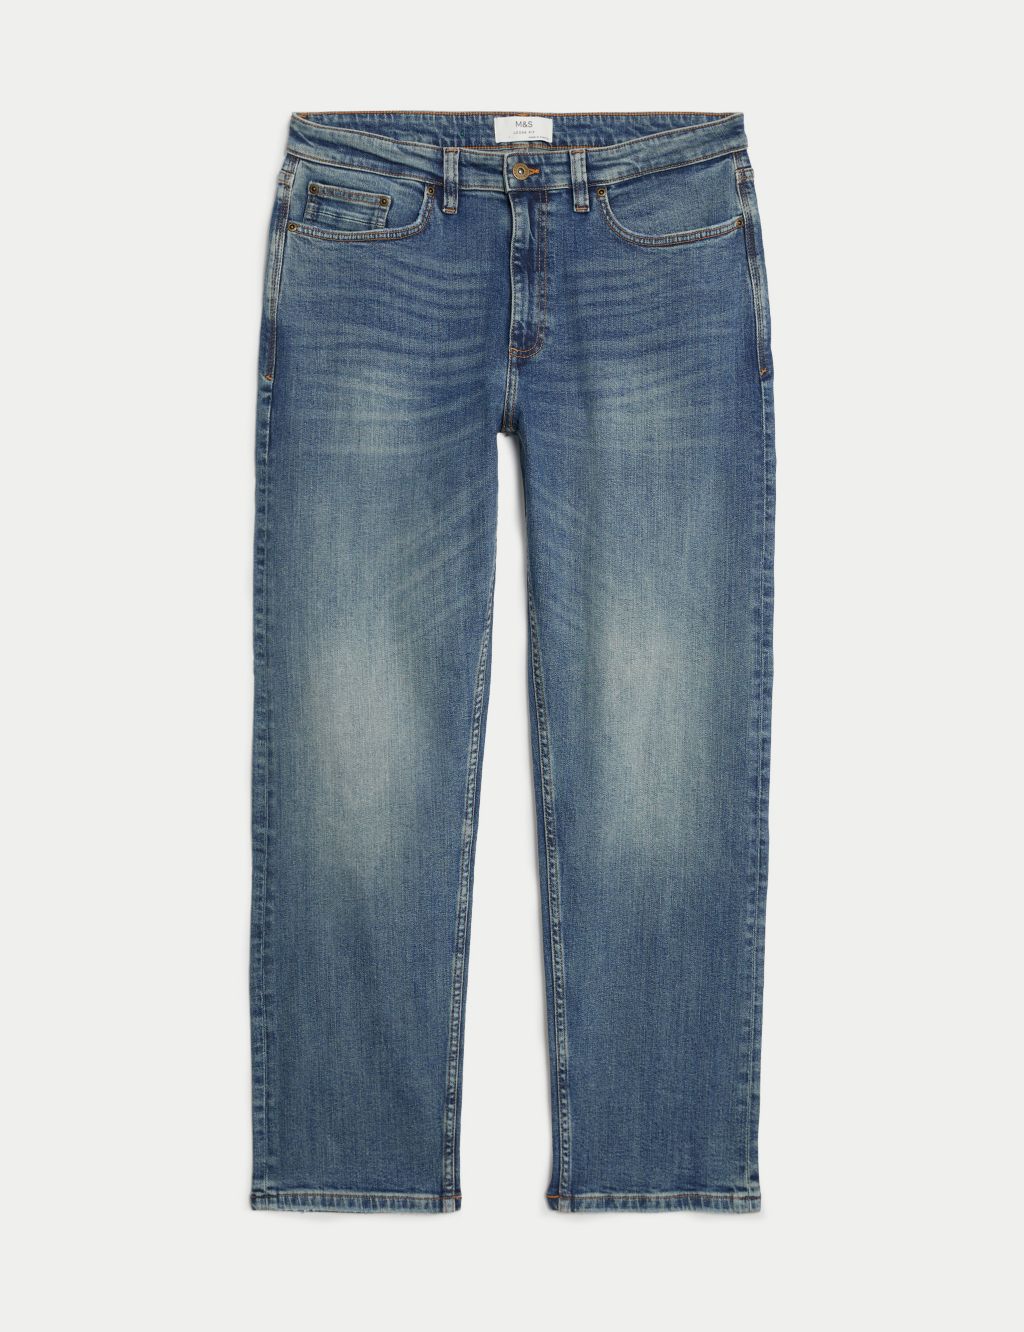 Loose Fit Vintage Wash Jeans image 2